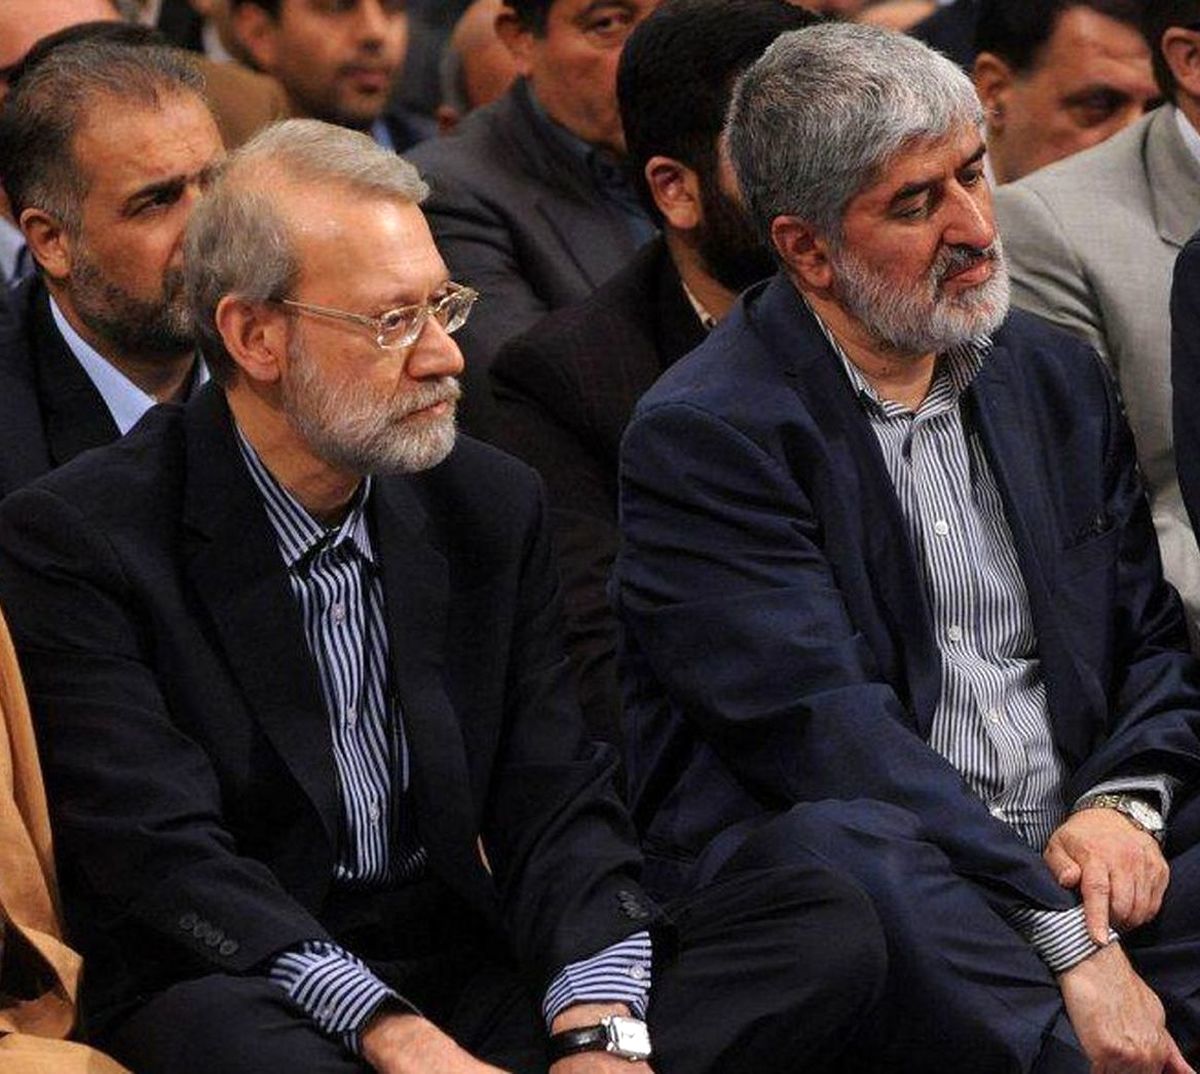 لاریجانی برای لیست انتخاباتی اش روی چه نیروهایی حساب باز کرده؟